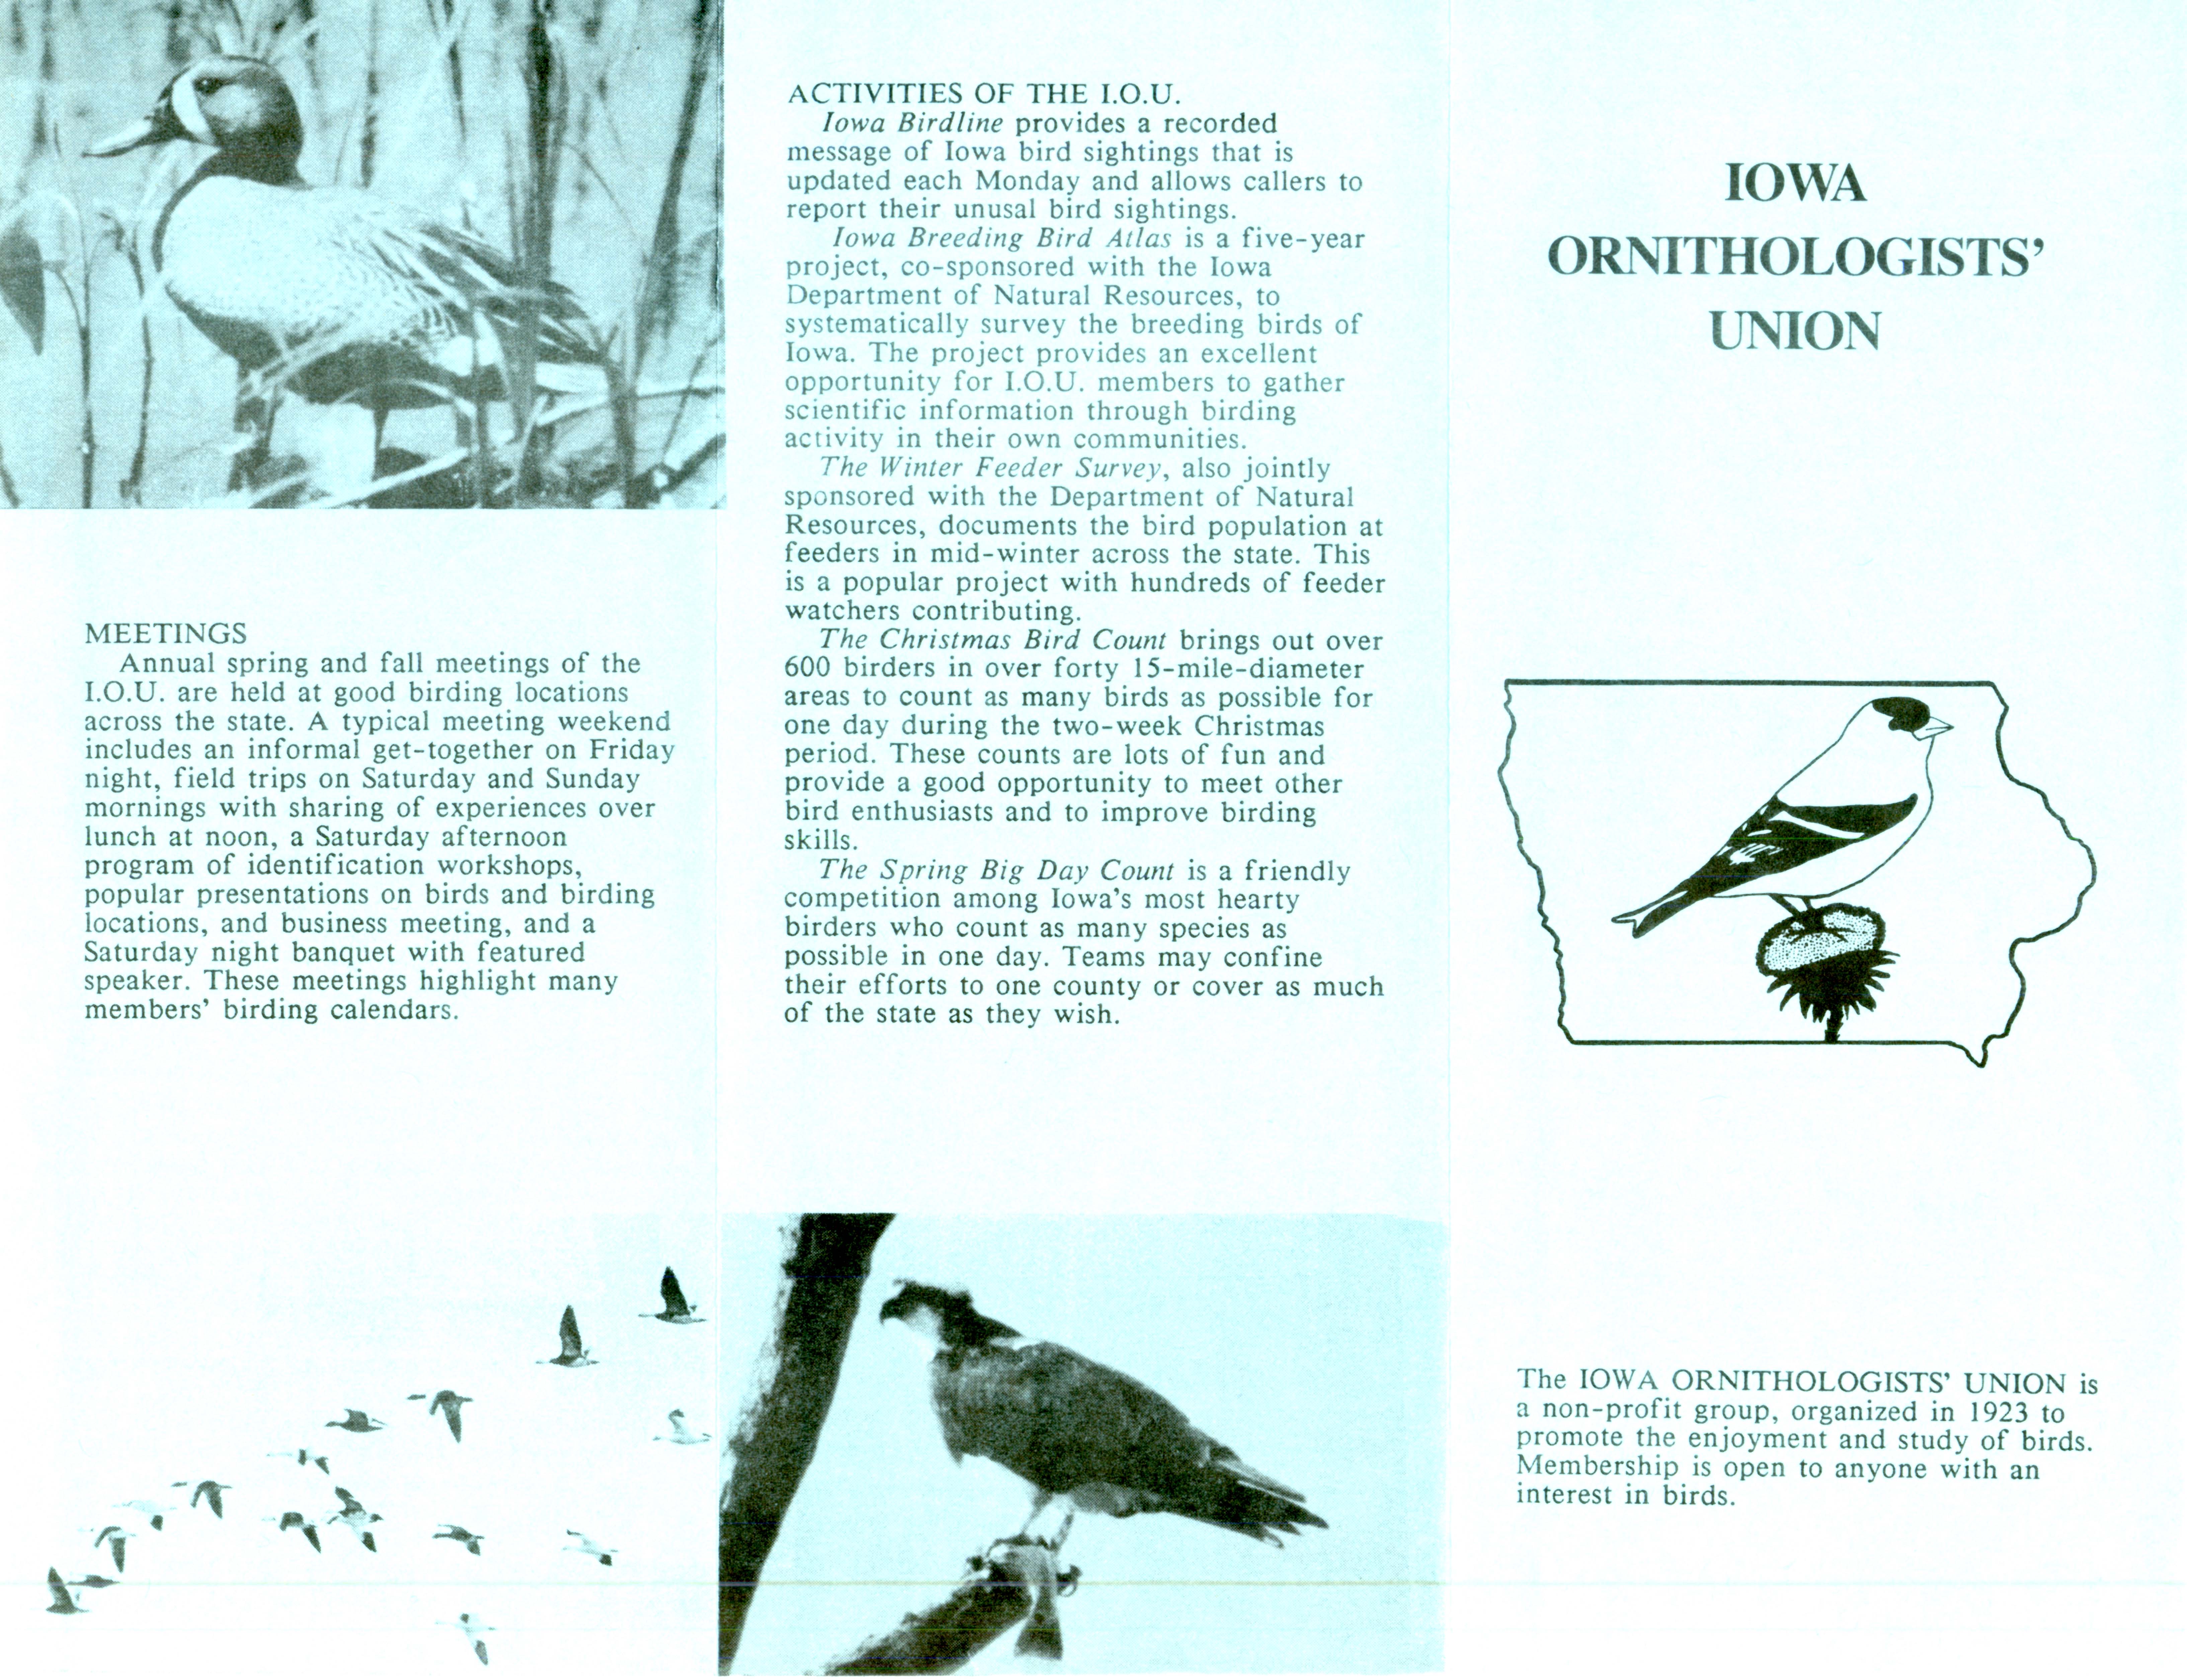 Iowa Ornithologists' Union pamphlet